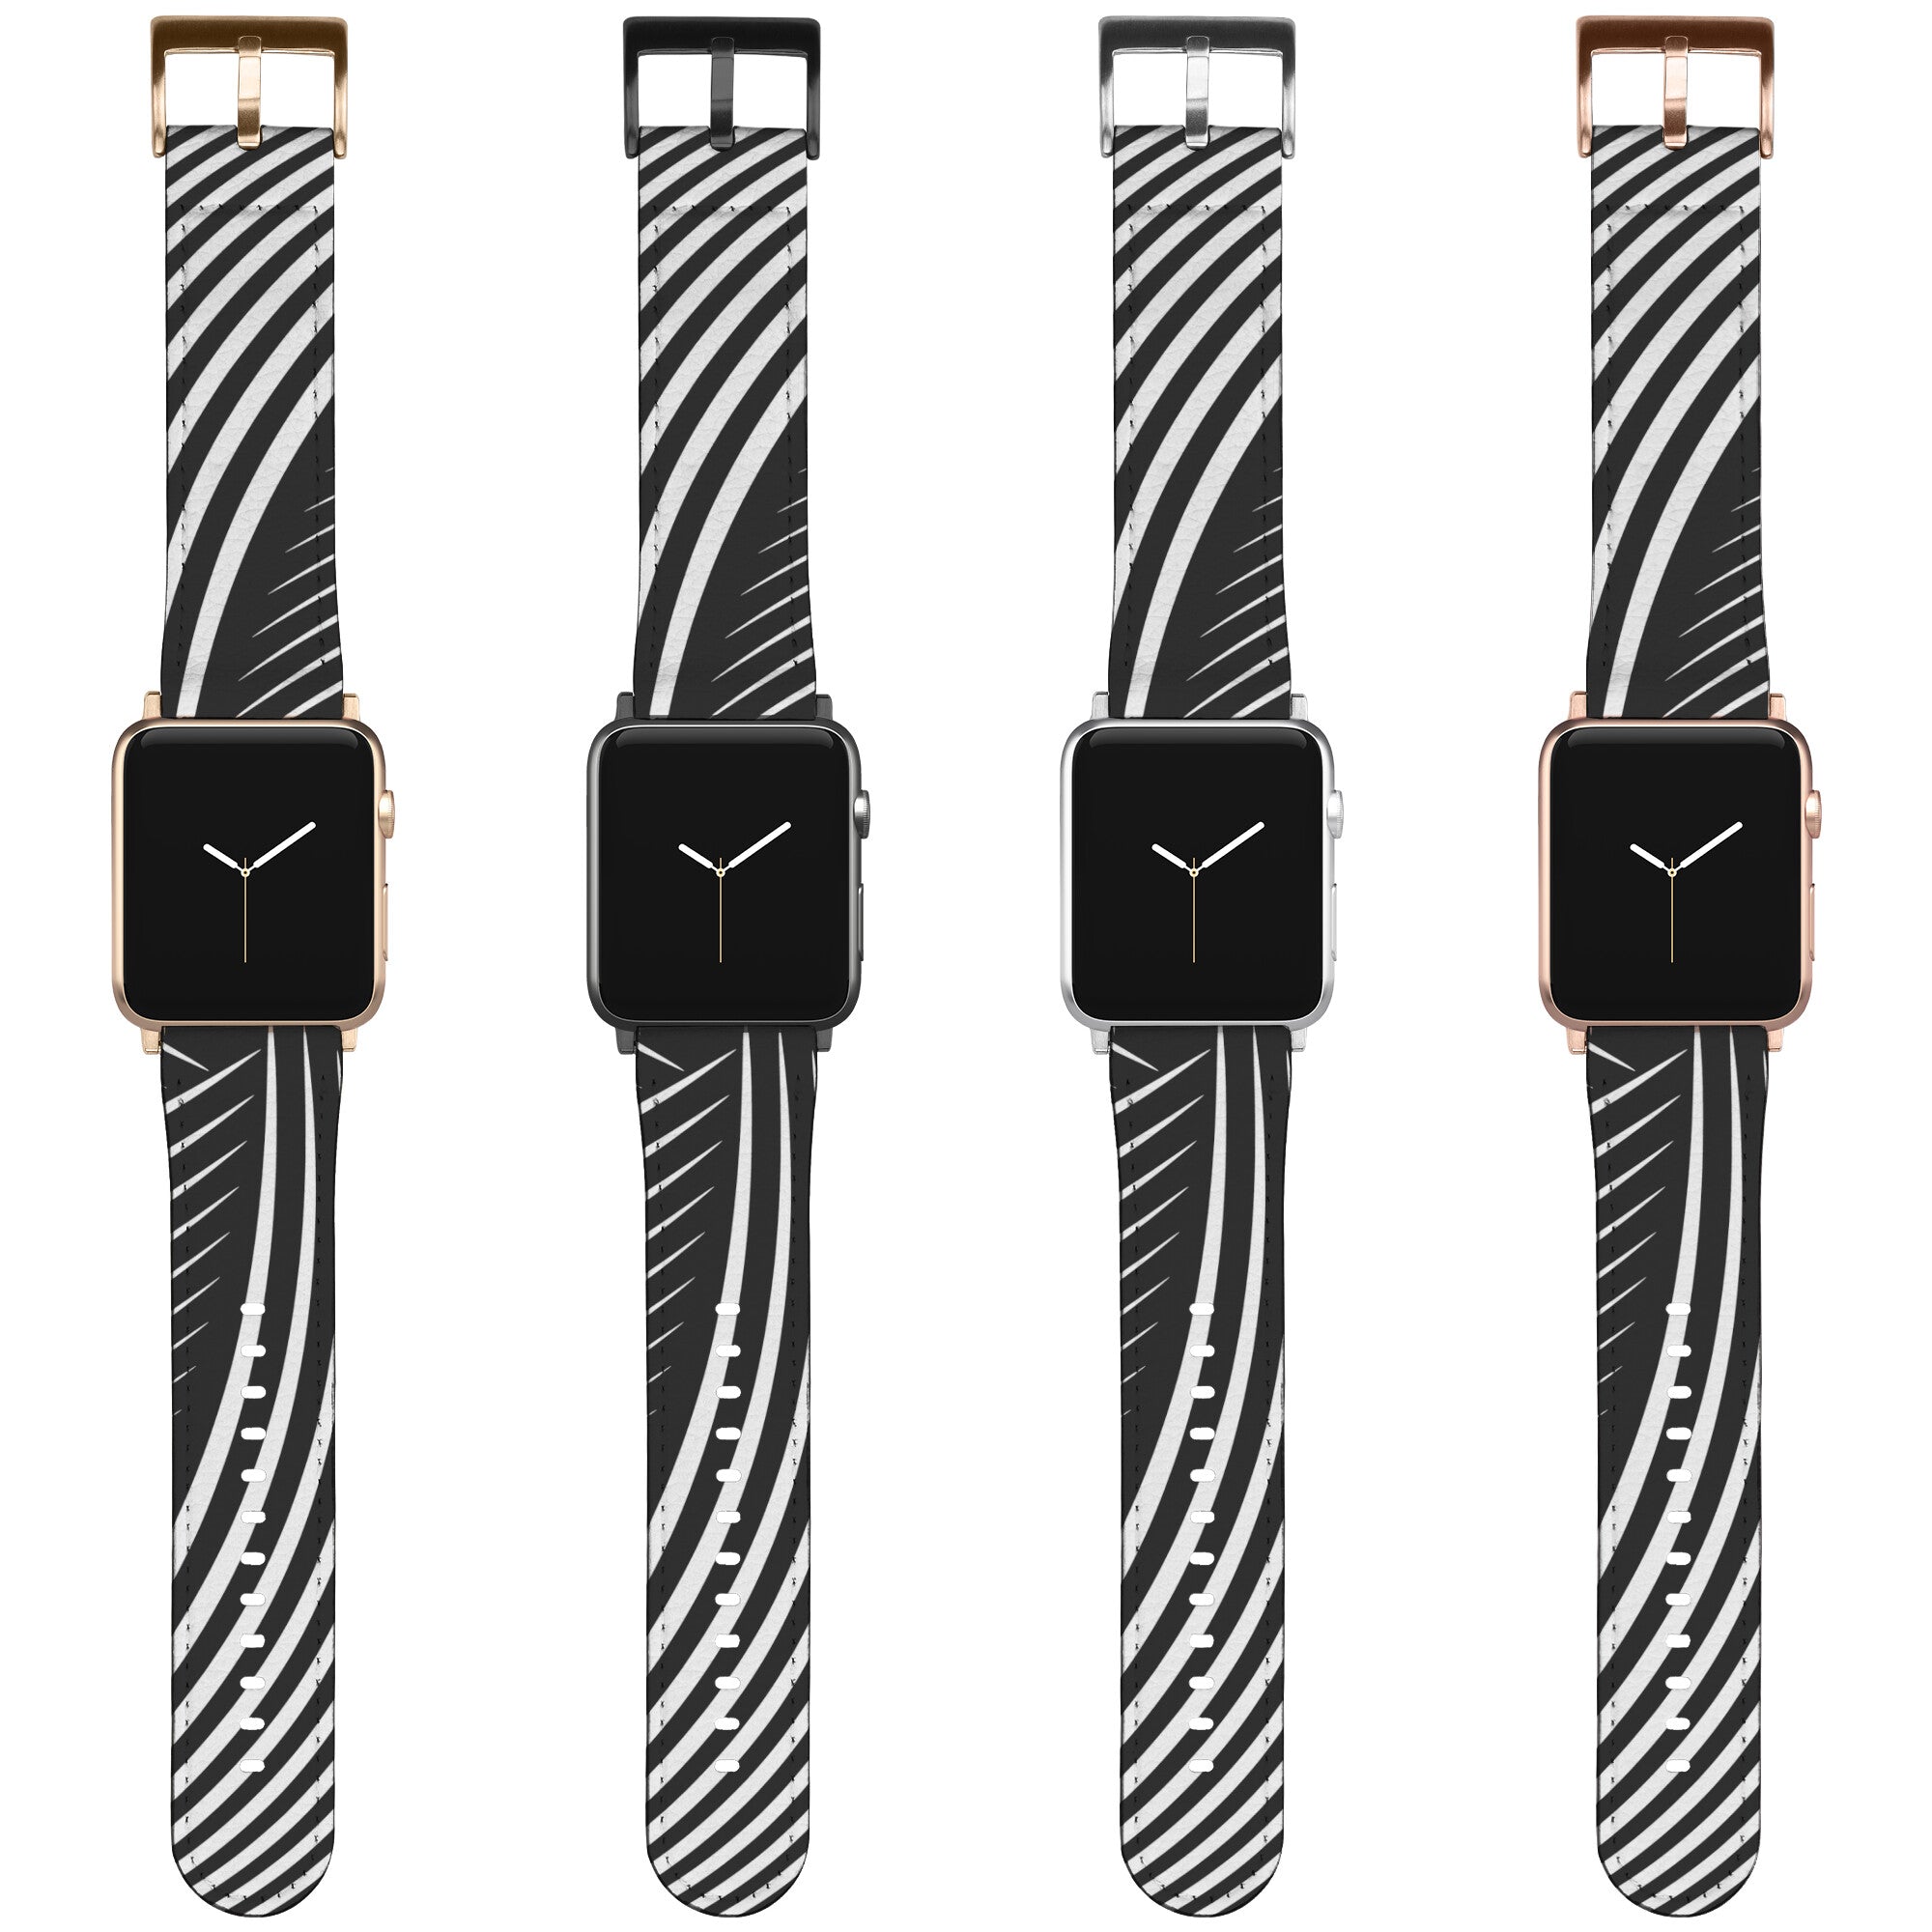 Modern Spiral Apple Watch Band